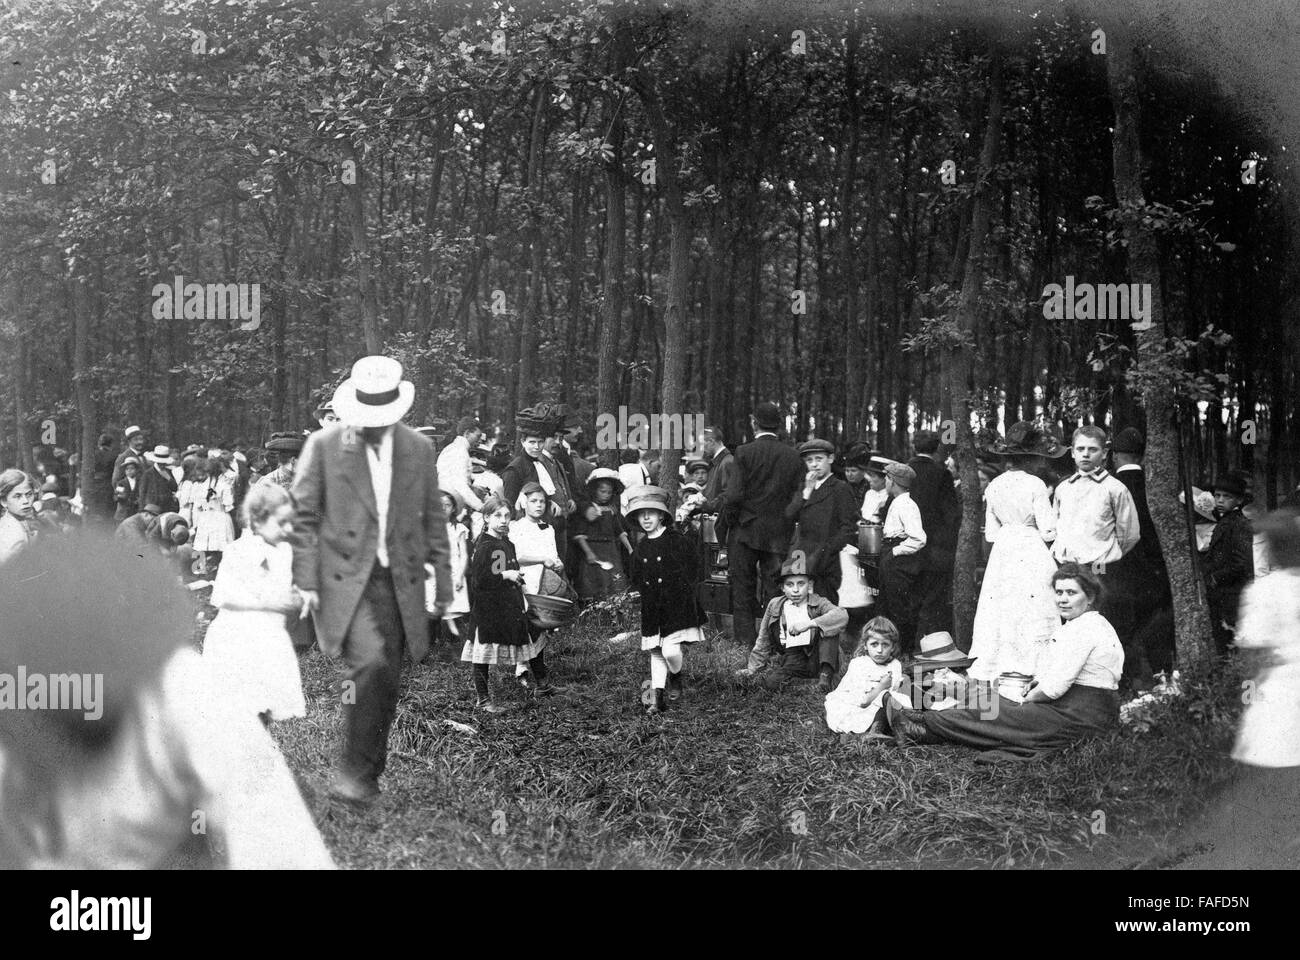 Gruppe der Naturfreunde bei einem Frühlingsfest Cöln, Deutschland 1910er Jahre. Groupe d'Naturfreunde Coeln ayant un temps de printemps, l'Allemagne des années 1910. Banque D'Images